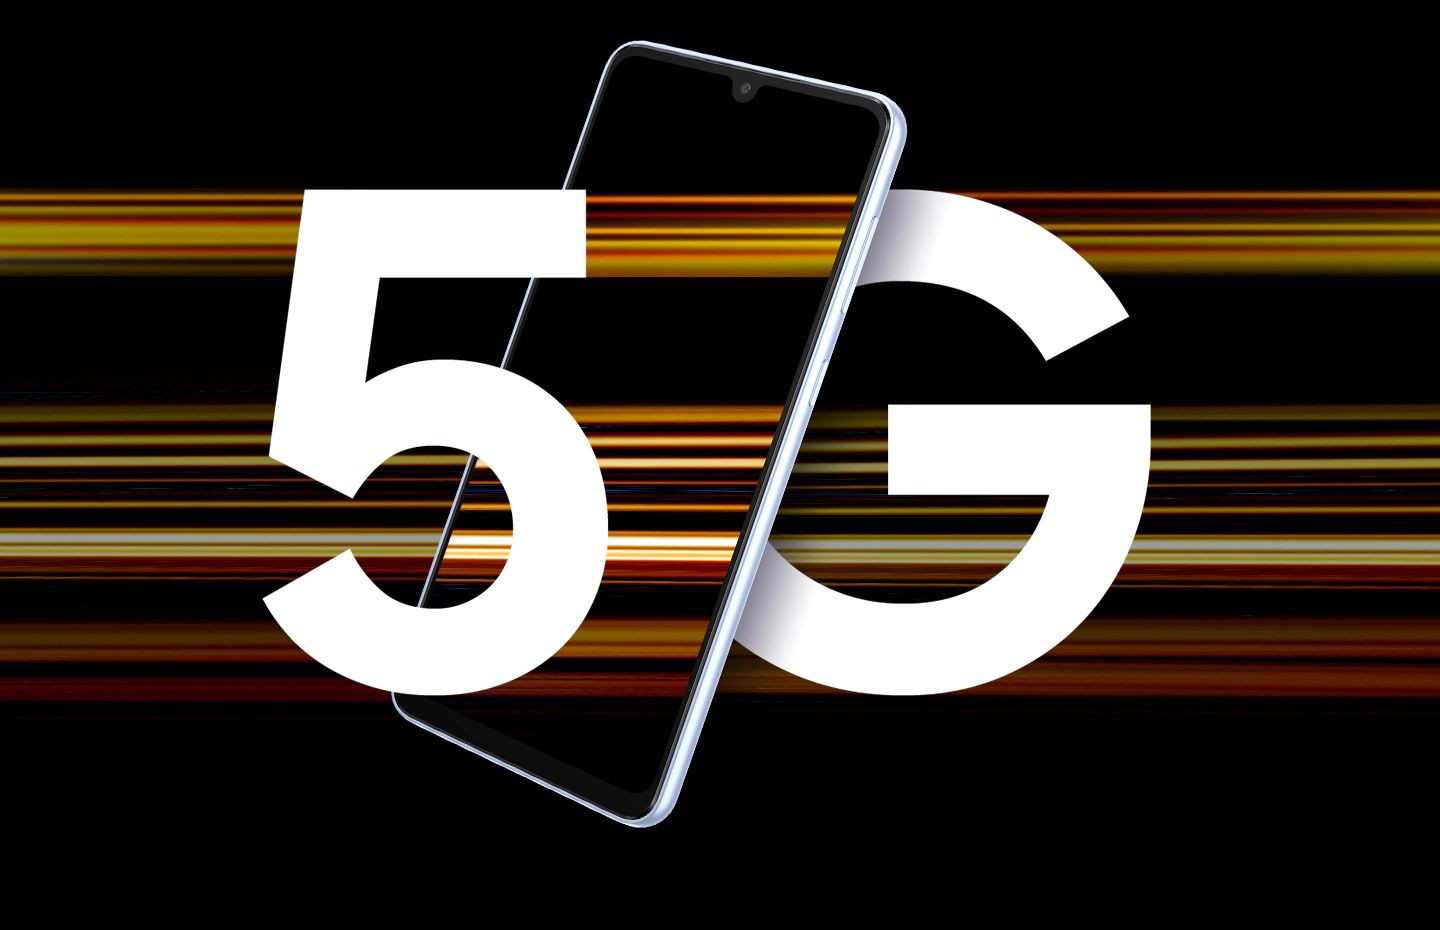 5G. Biz bağlandık bile Gelecek nesil mobil veri ağı 5G’nin gücüyle elde edeceğiniz yüksek hız; süper akıcı oyunlar ve çevrim içi yayınlardan ultra hızlı paylaşım ve indirmeye kadar pek çok içeriği deneyimleme ve paylaşma yöntemlerinizi baştan sona değiştirecek.